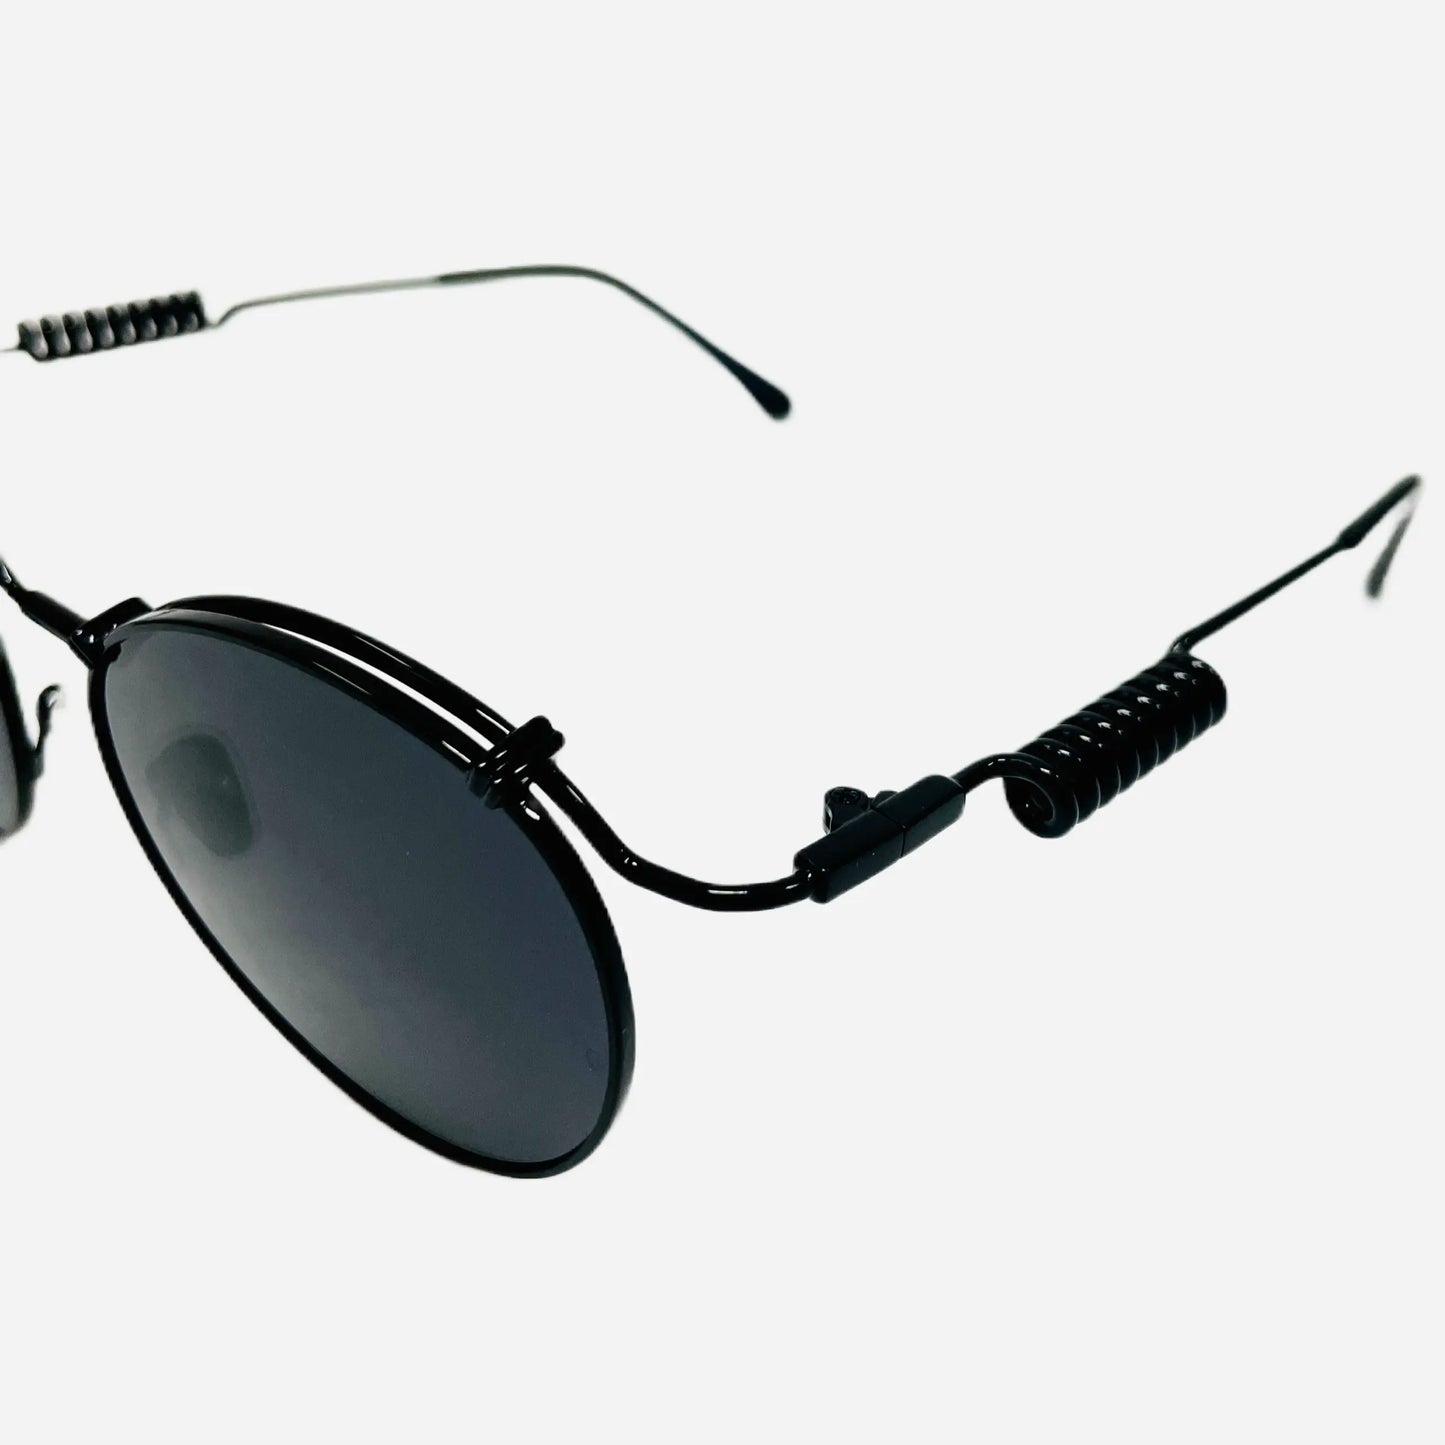 Vintage-Jean-Paul-Gaultier-Sonnenbrille-Sunglasses-Model-56-9174-black-detail